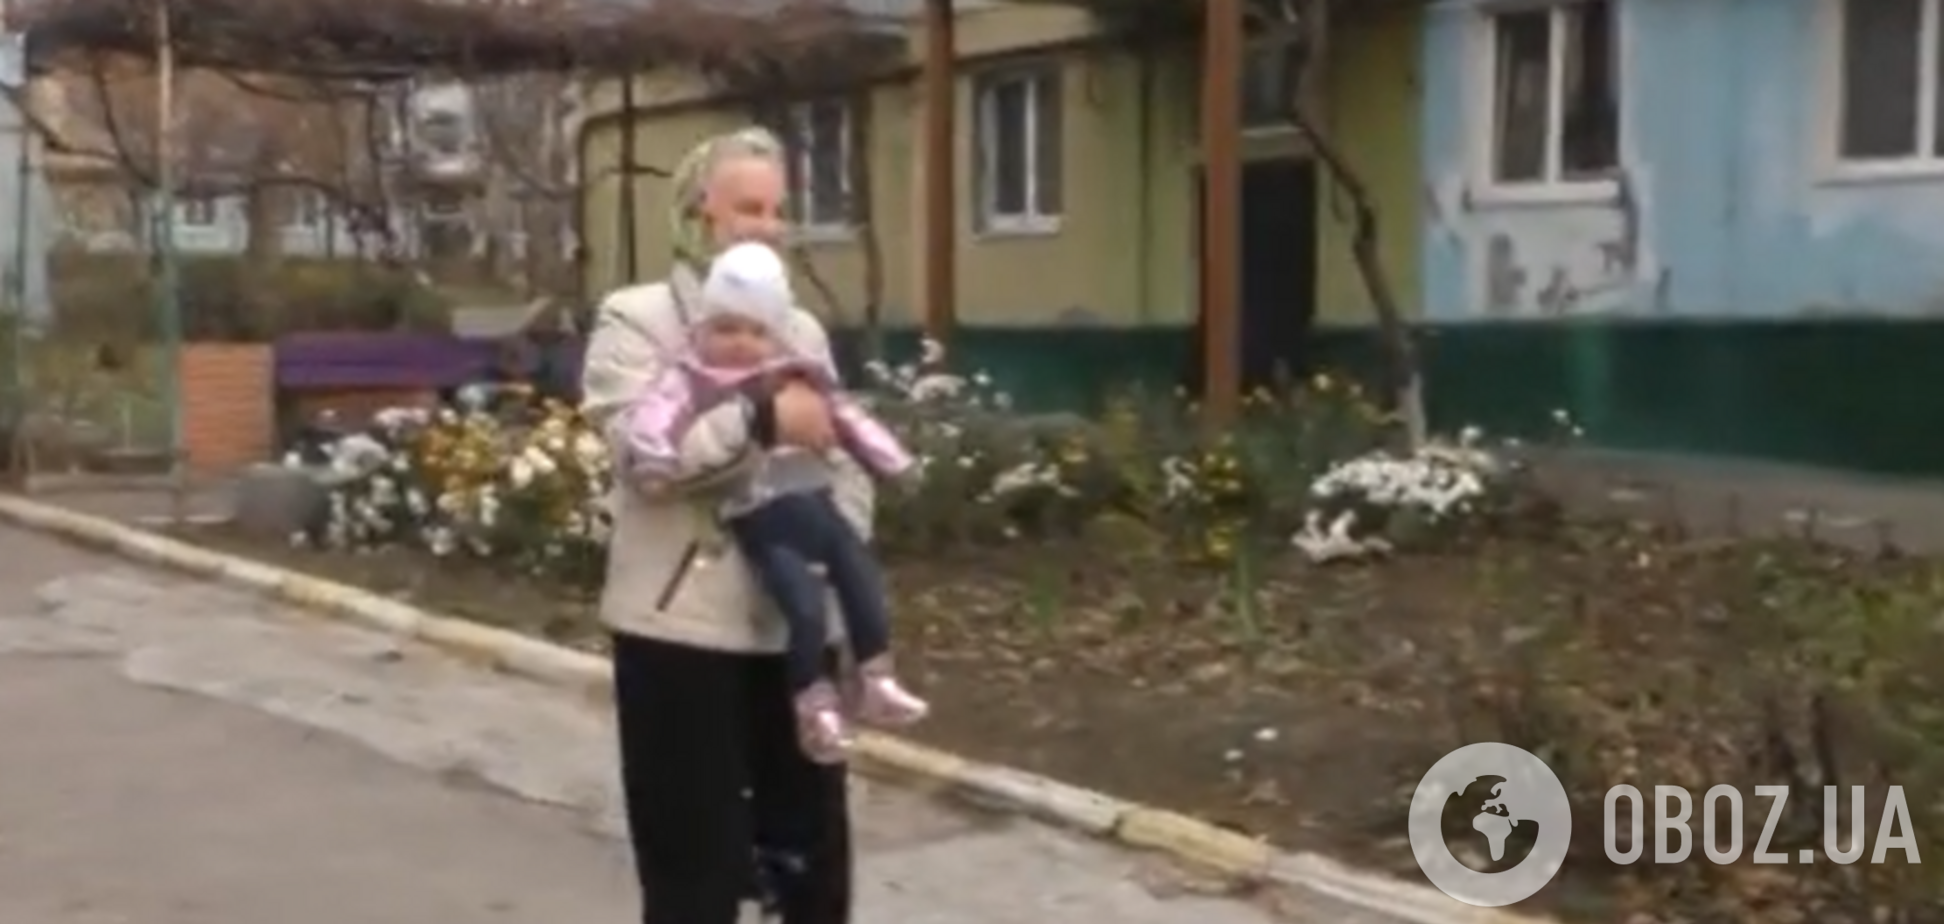 Українська бабуся на гіроскутері стала зіркою мережі. Відео